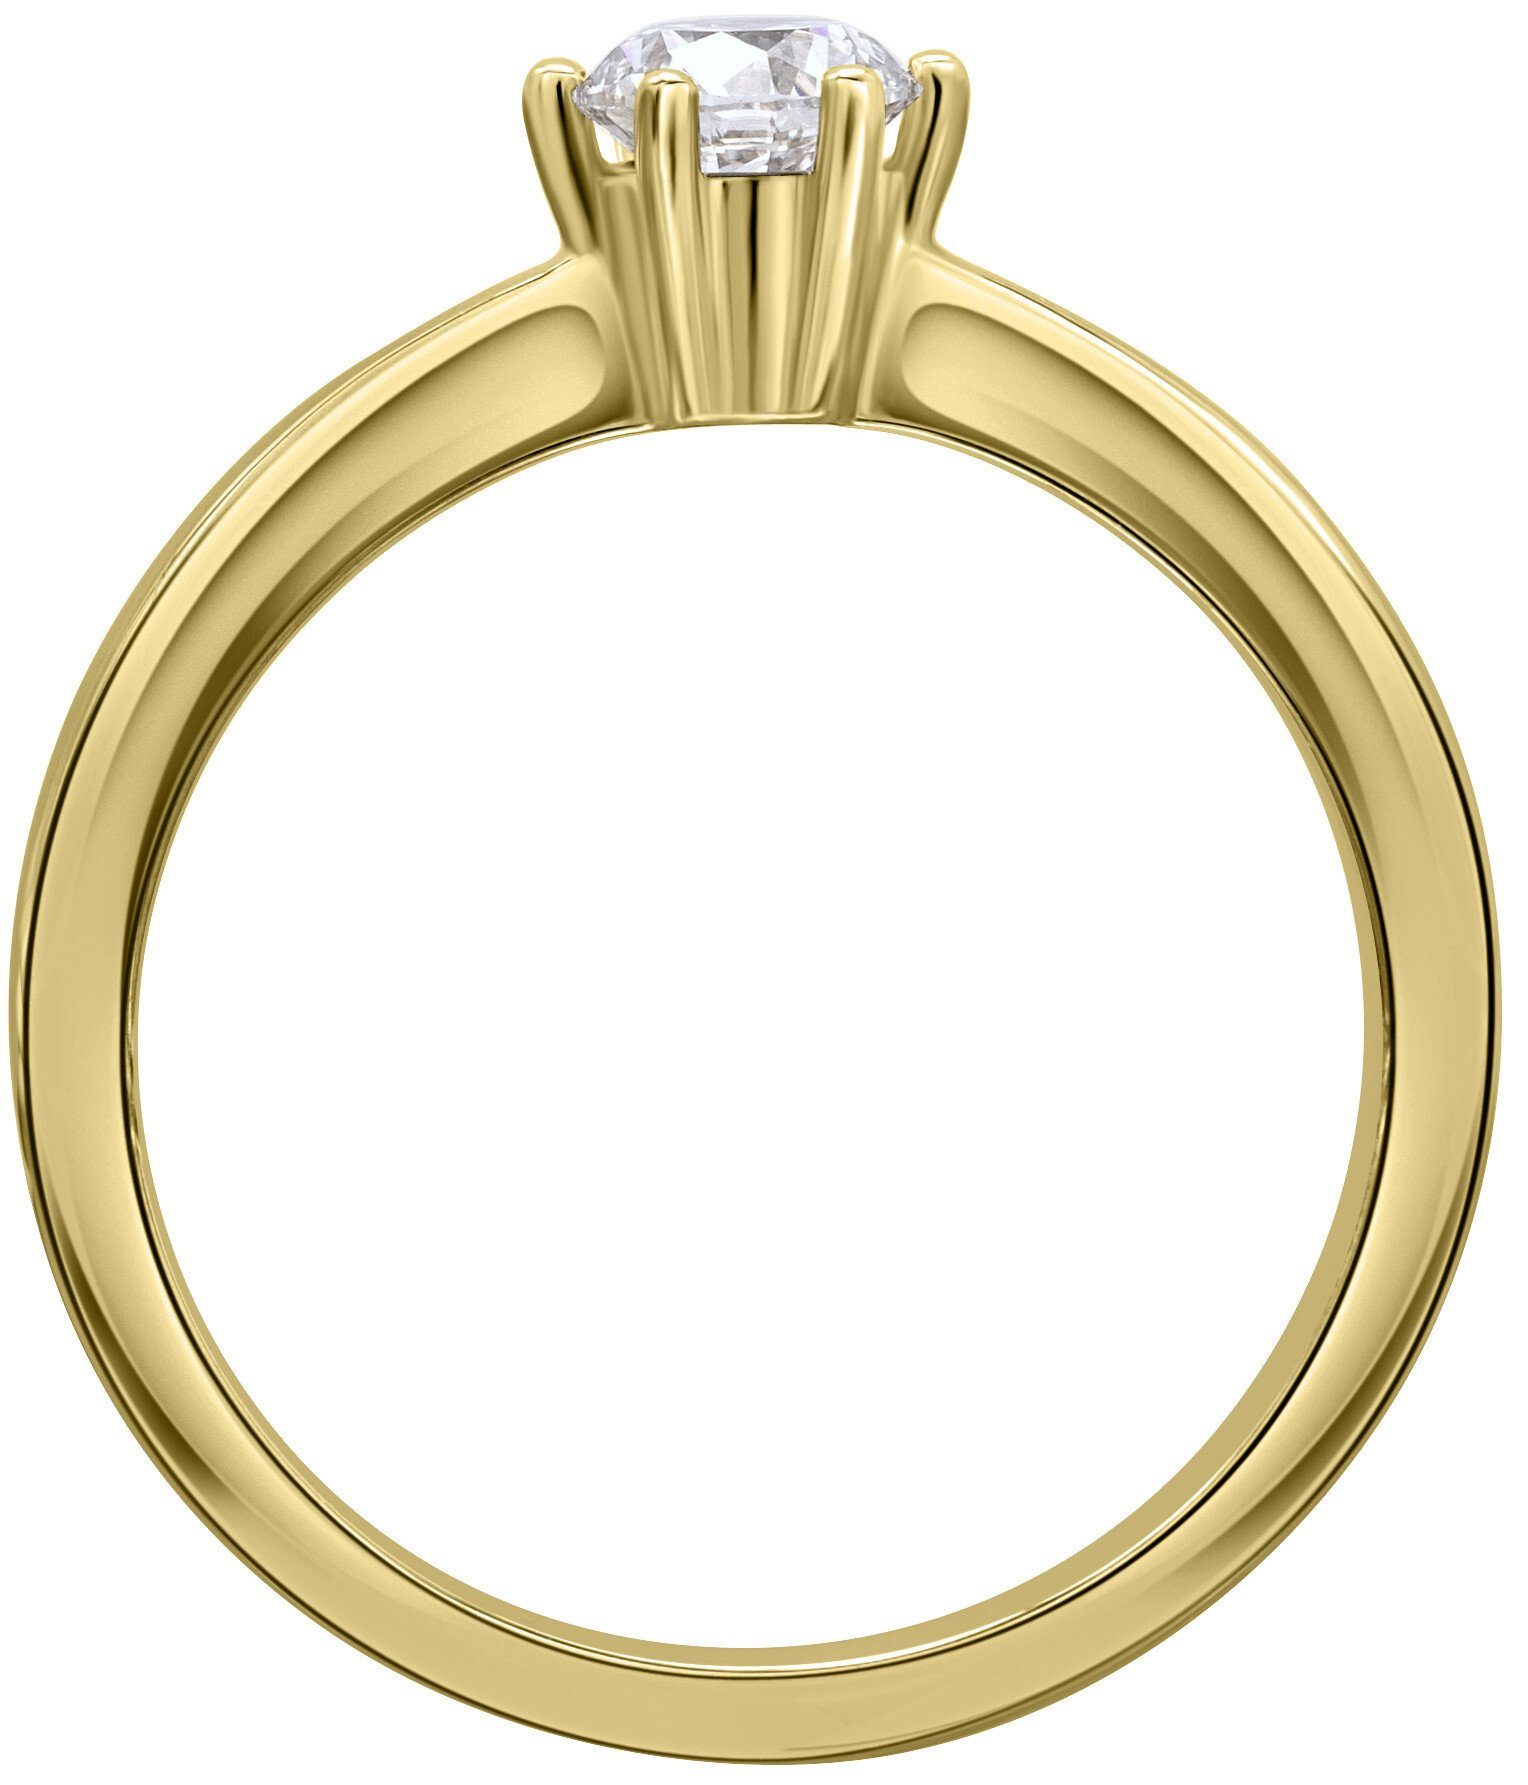 ONE ELEMENT Diamantring 0.15 ct Diamant Brillant Ring aus 585 Gelbgold, Damen Gold Schmuck